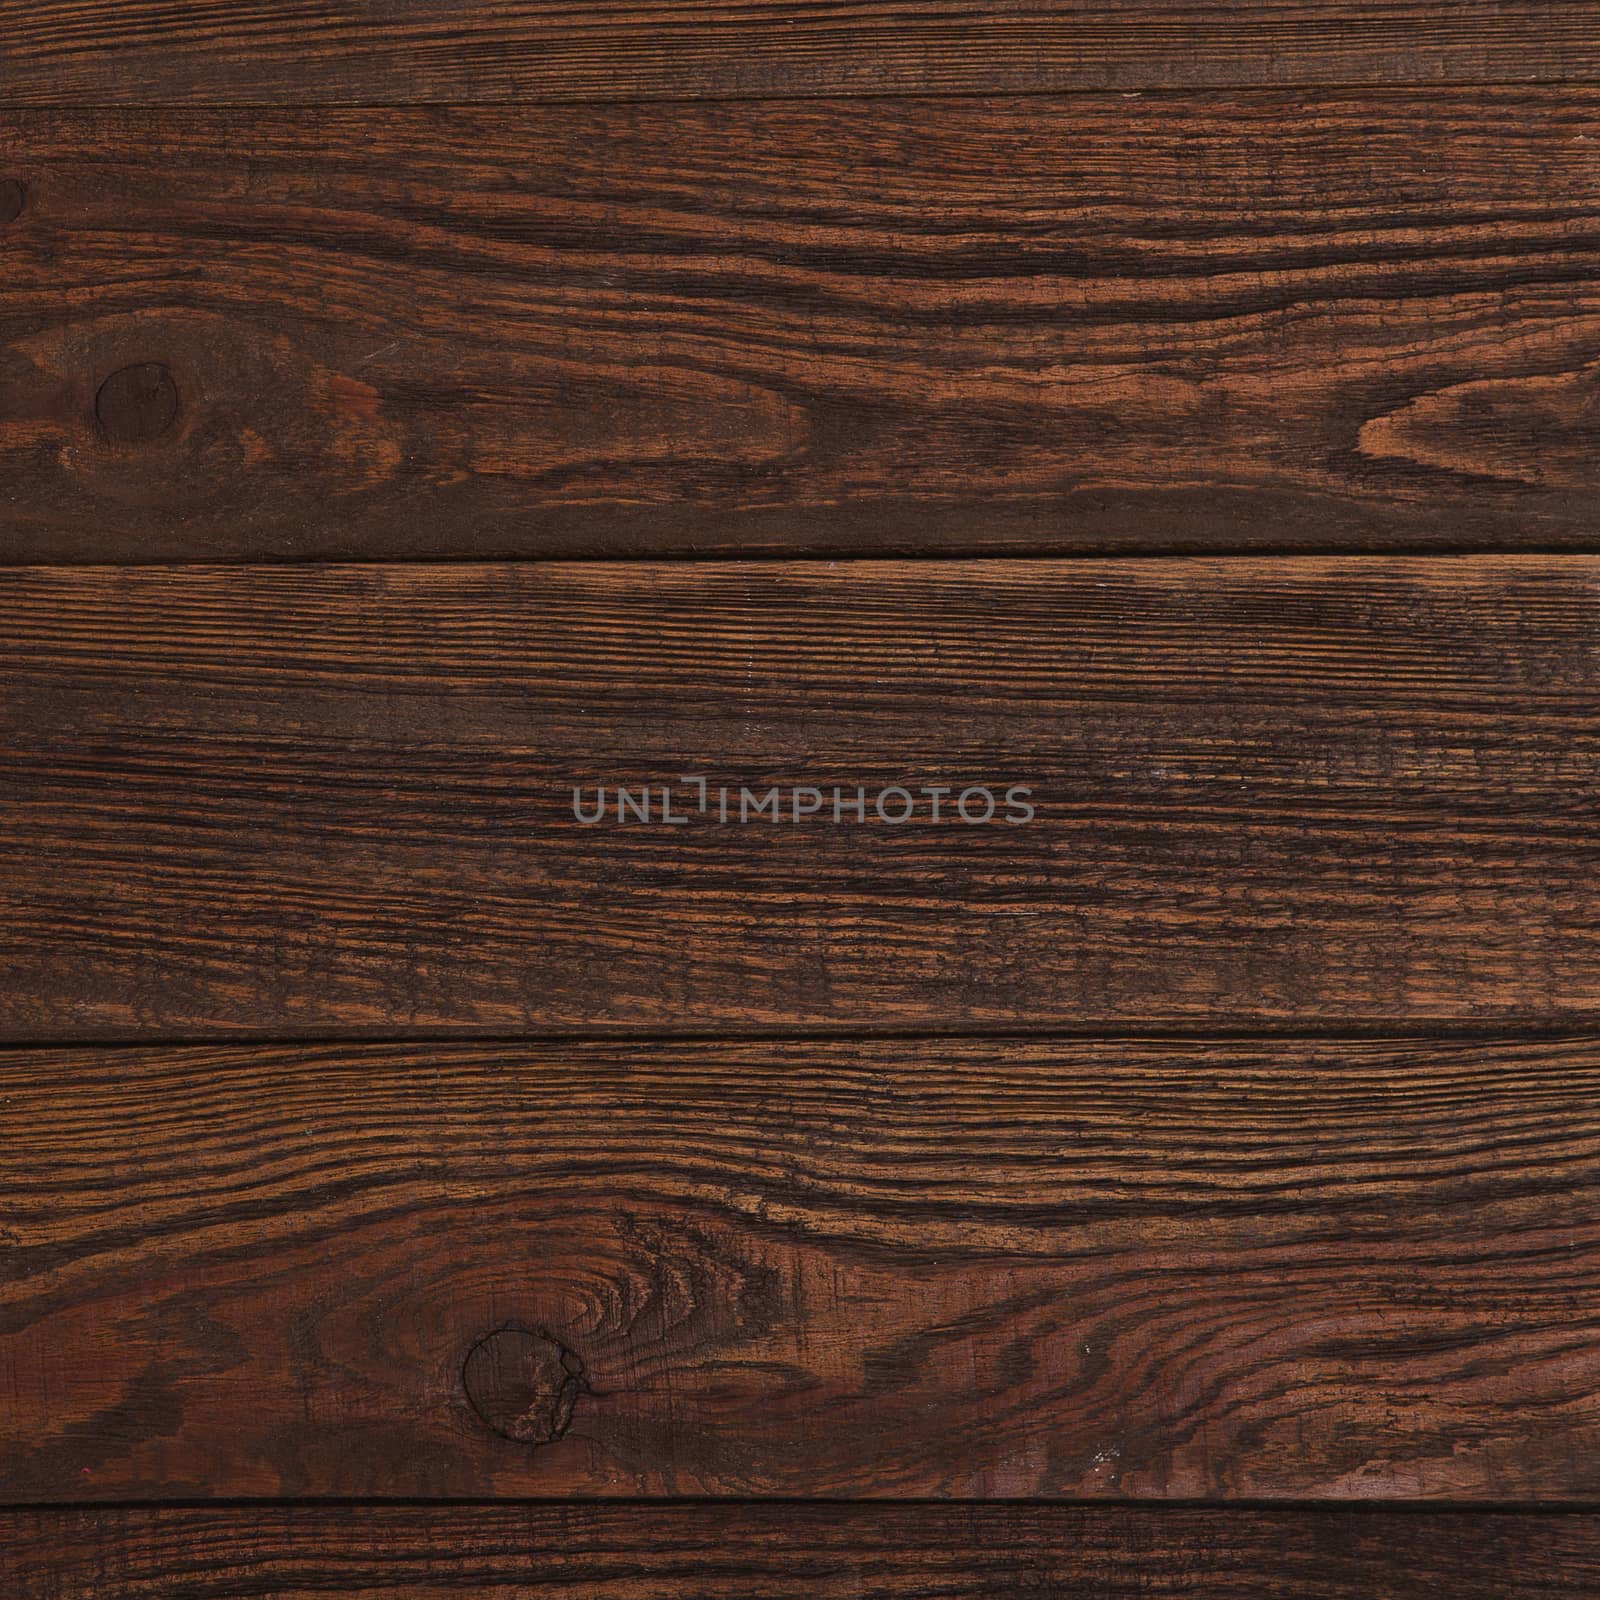 Brown Grunge plank wood texture background